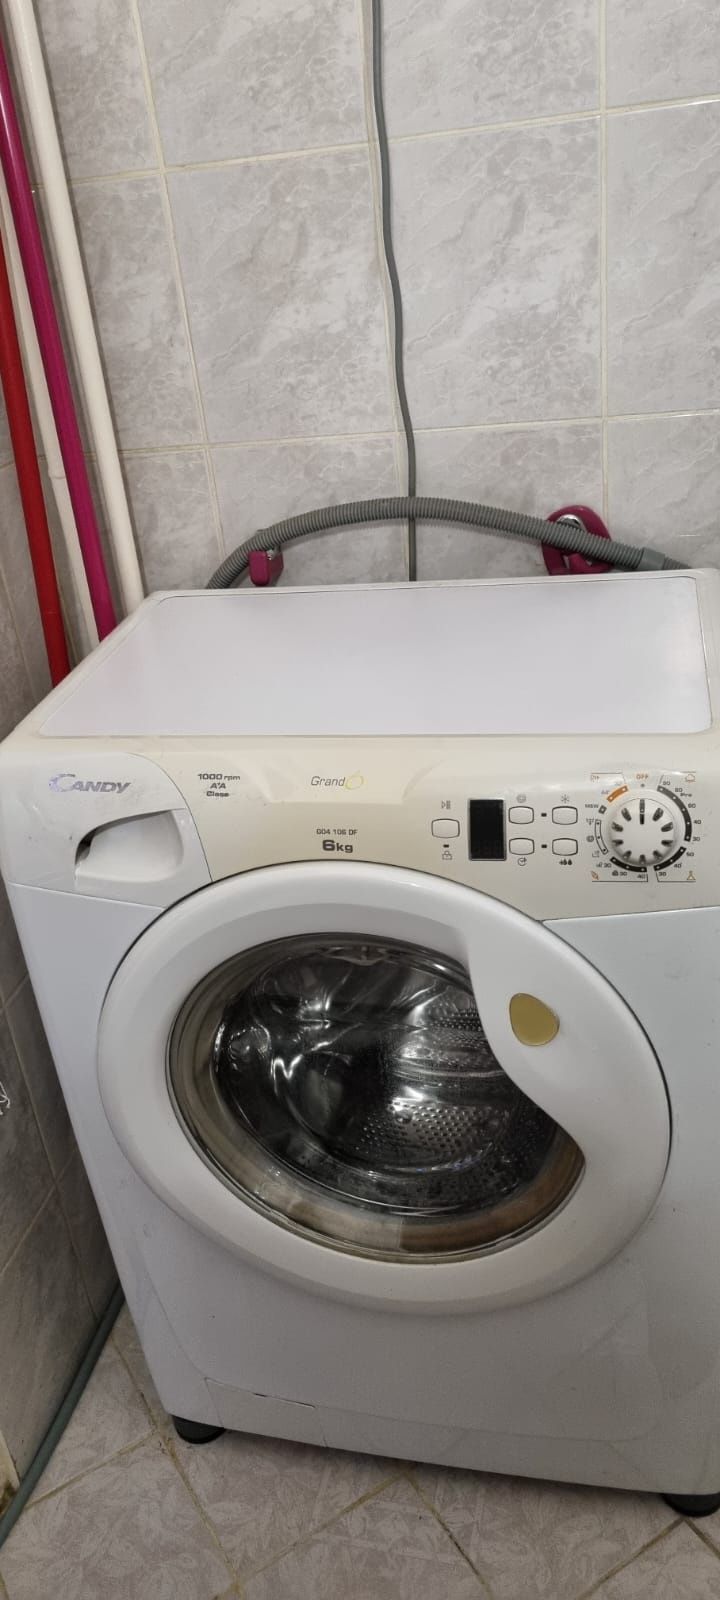 Sprzedam pralkę automatyczną Candy G04 106DF 6kg prania